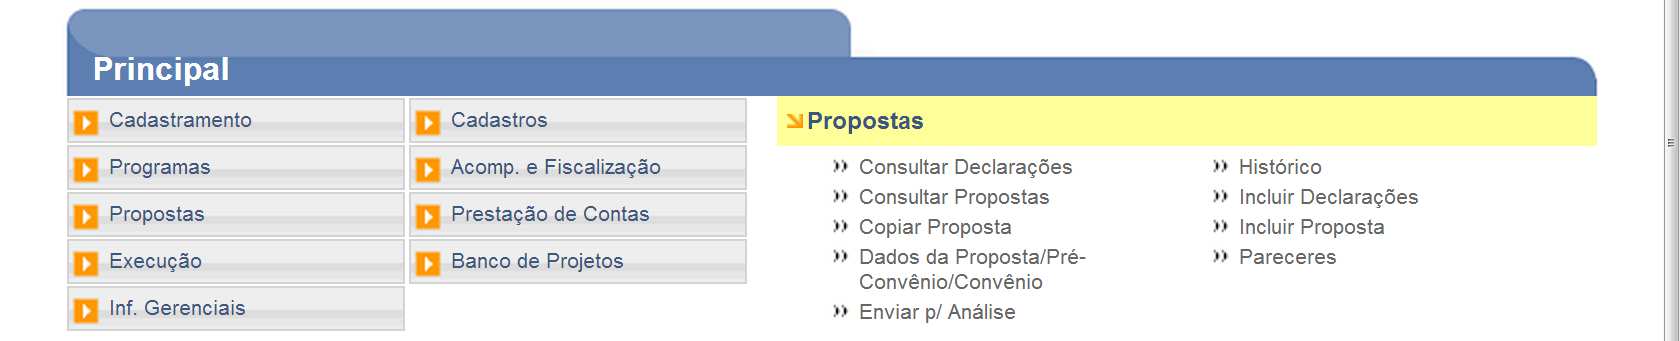 a) Para incluir e enviar a Proposta/Plano de trabalho acessar o portal dos convênios no endereço www.convenios.gov.br e clique em () Acessar o SICONV.